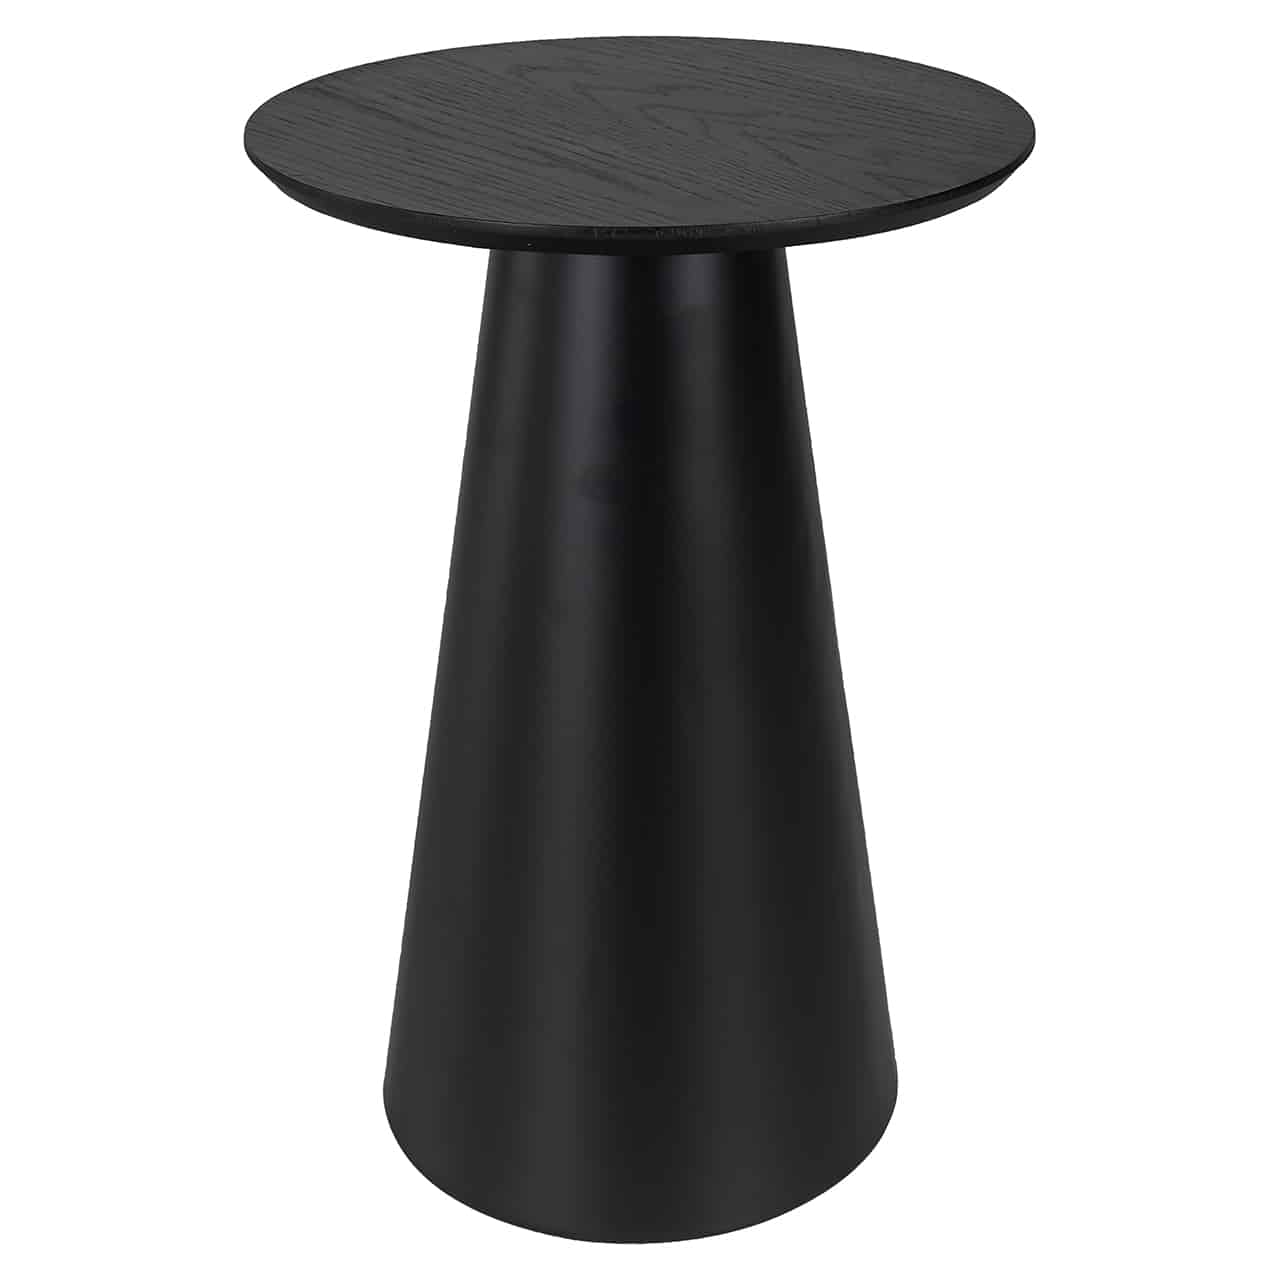 Beistelltisch in schwarz; mit einem konisch zulaufenden Fuß und kleiner, runder Tischplatte.